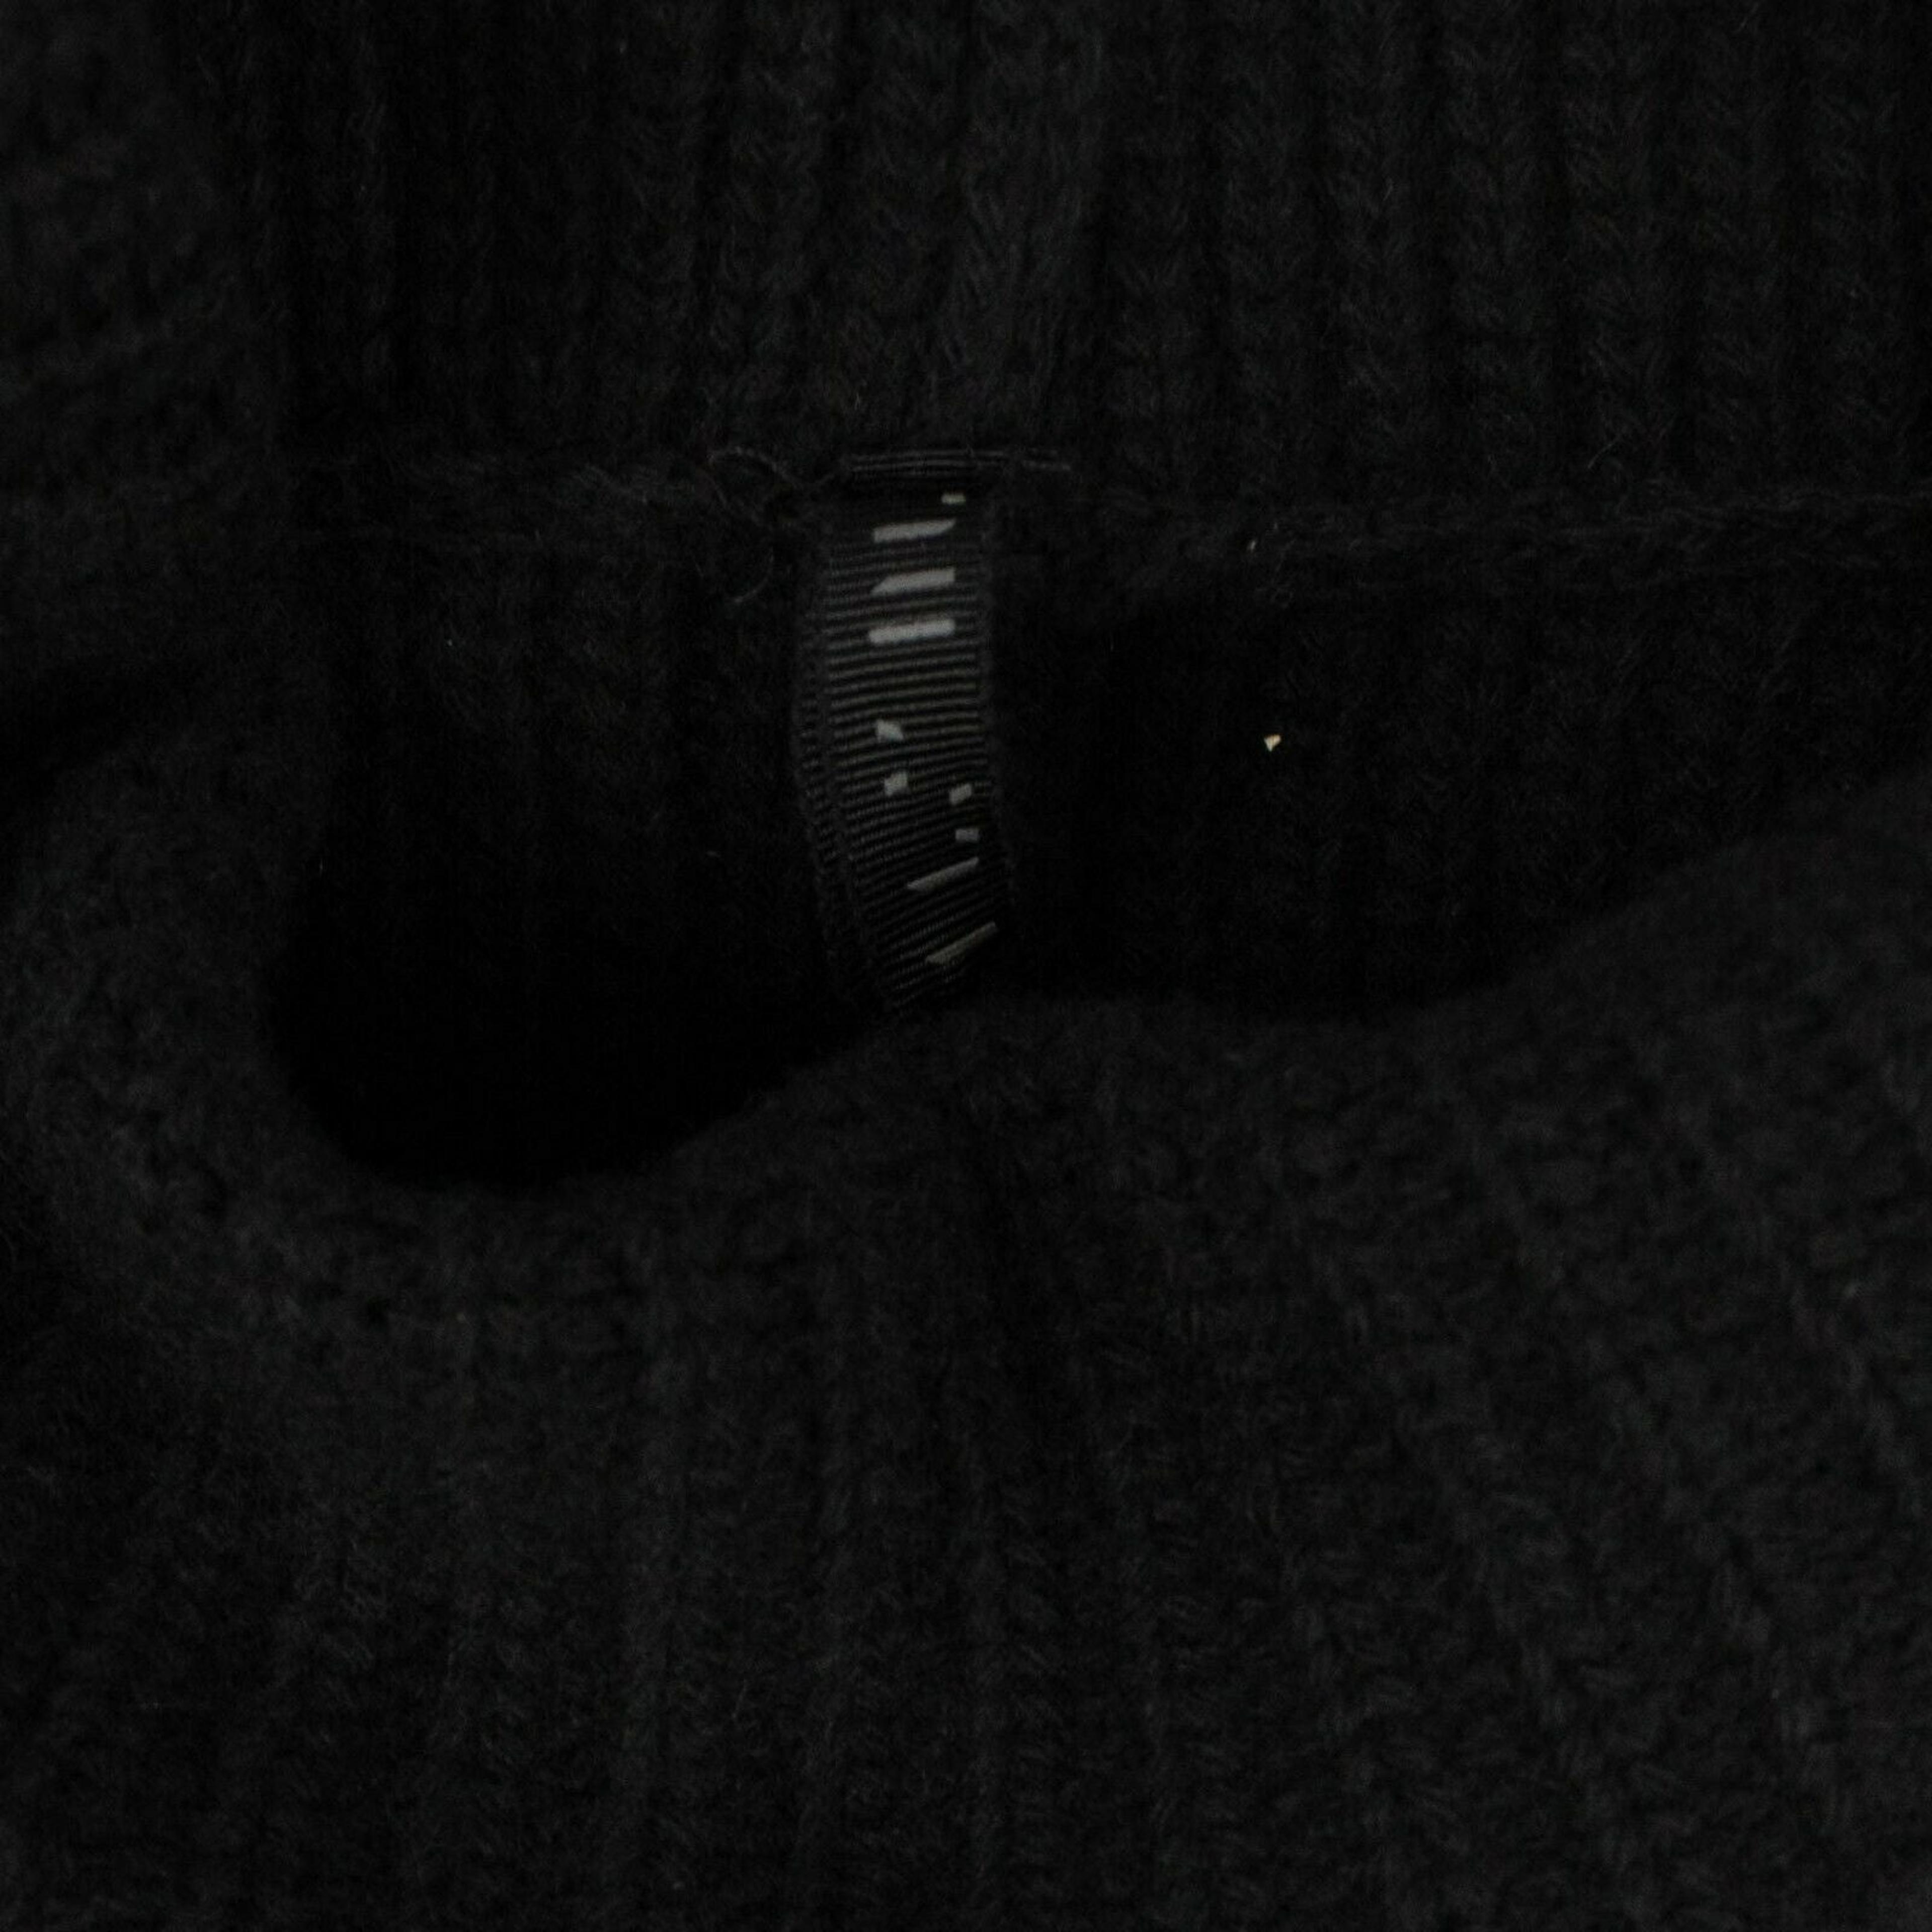 Alternate View 4 of Women's Black Wool Roll Neck Asymmetric Sweater